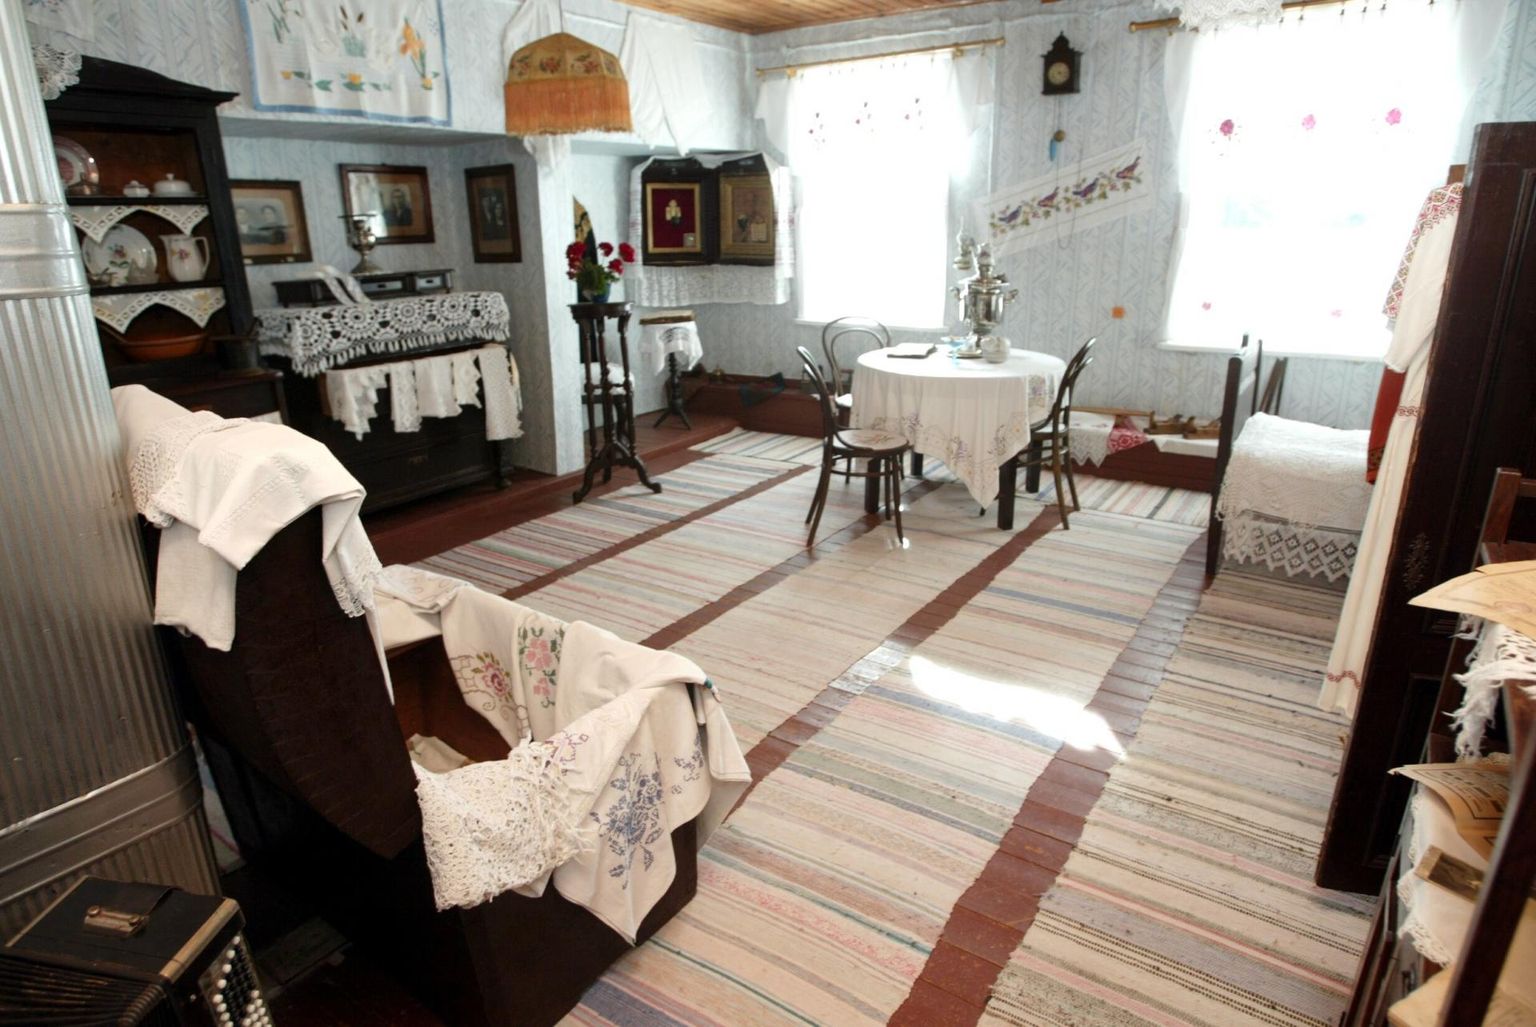 Puhtusest säravad vaibad ja muud kodutekstiilid Peipsi äärse Varnja küla elava ajaloo muuseumis, mis tutvustab vanausuliste eluviisi ülemöödunud sajandivahetusel.